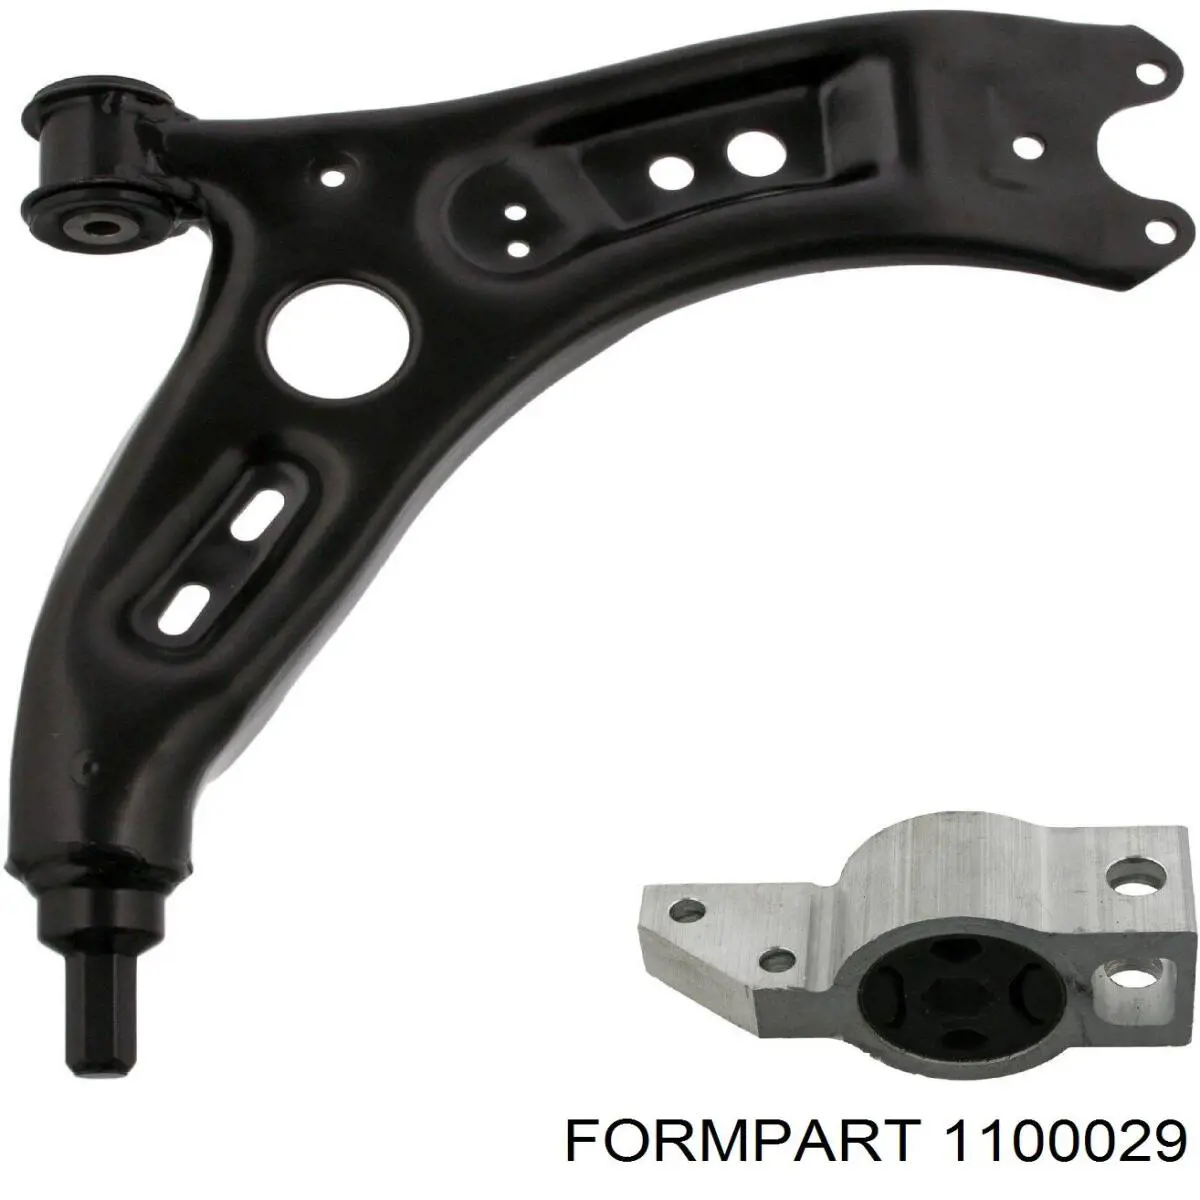 1100029 Formpart/Otoform silentblock de suspensión delantero inferior